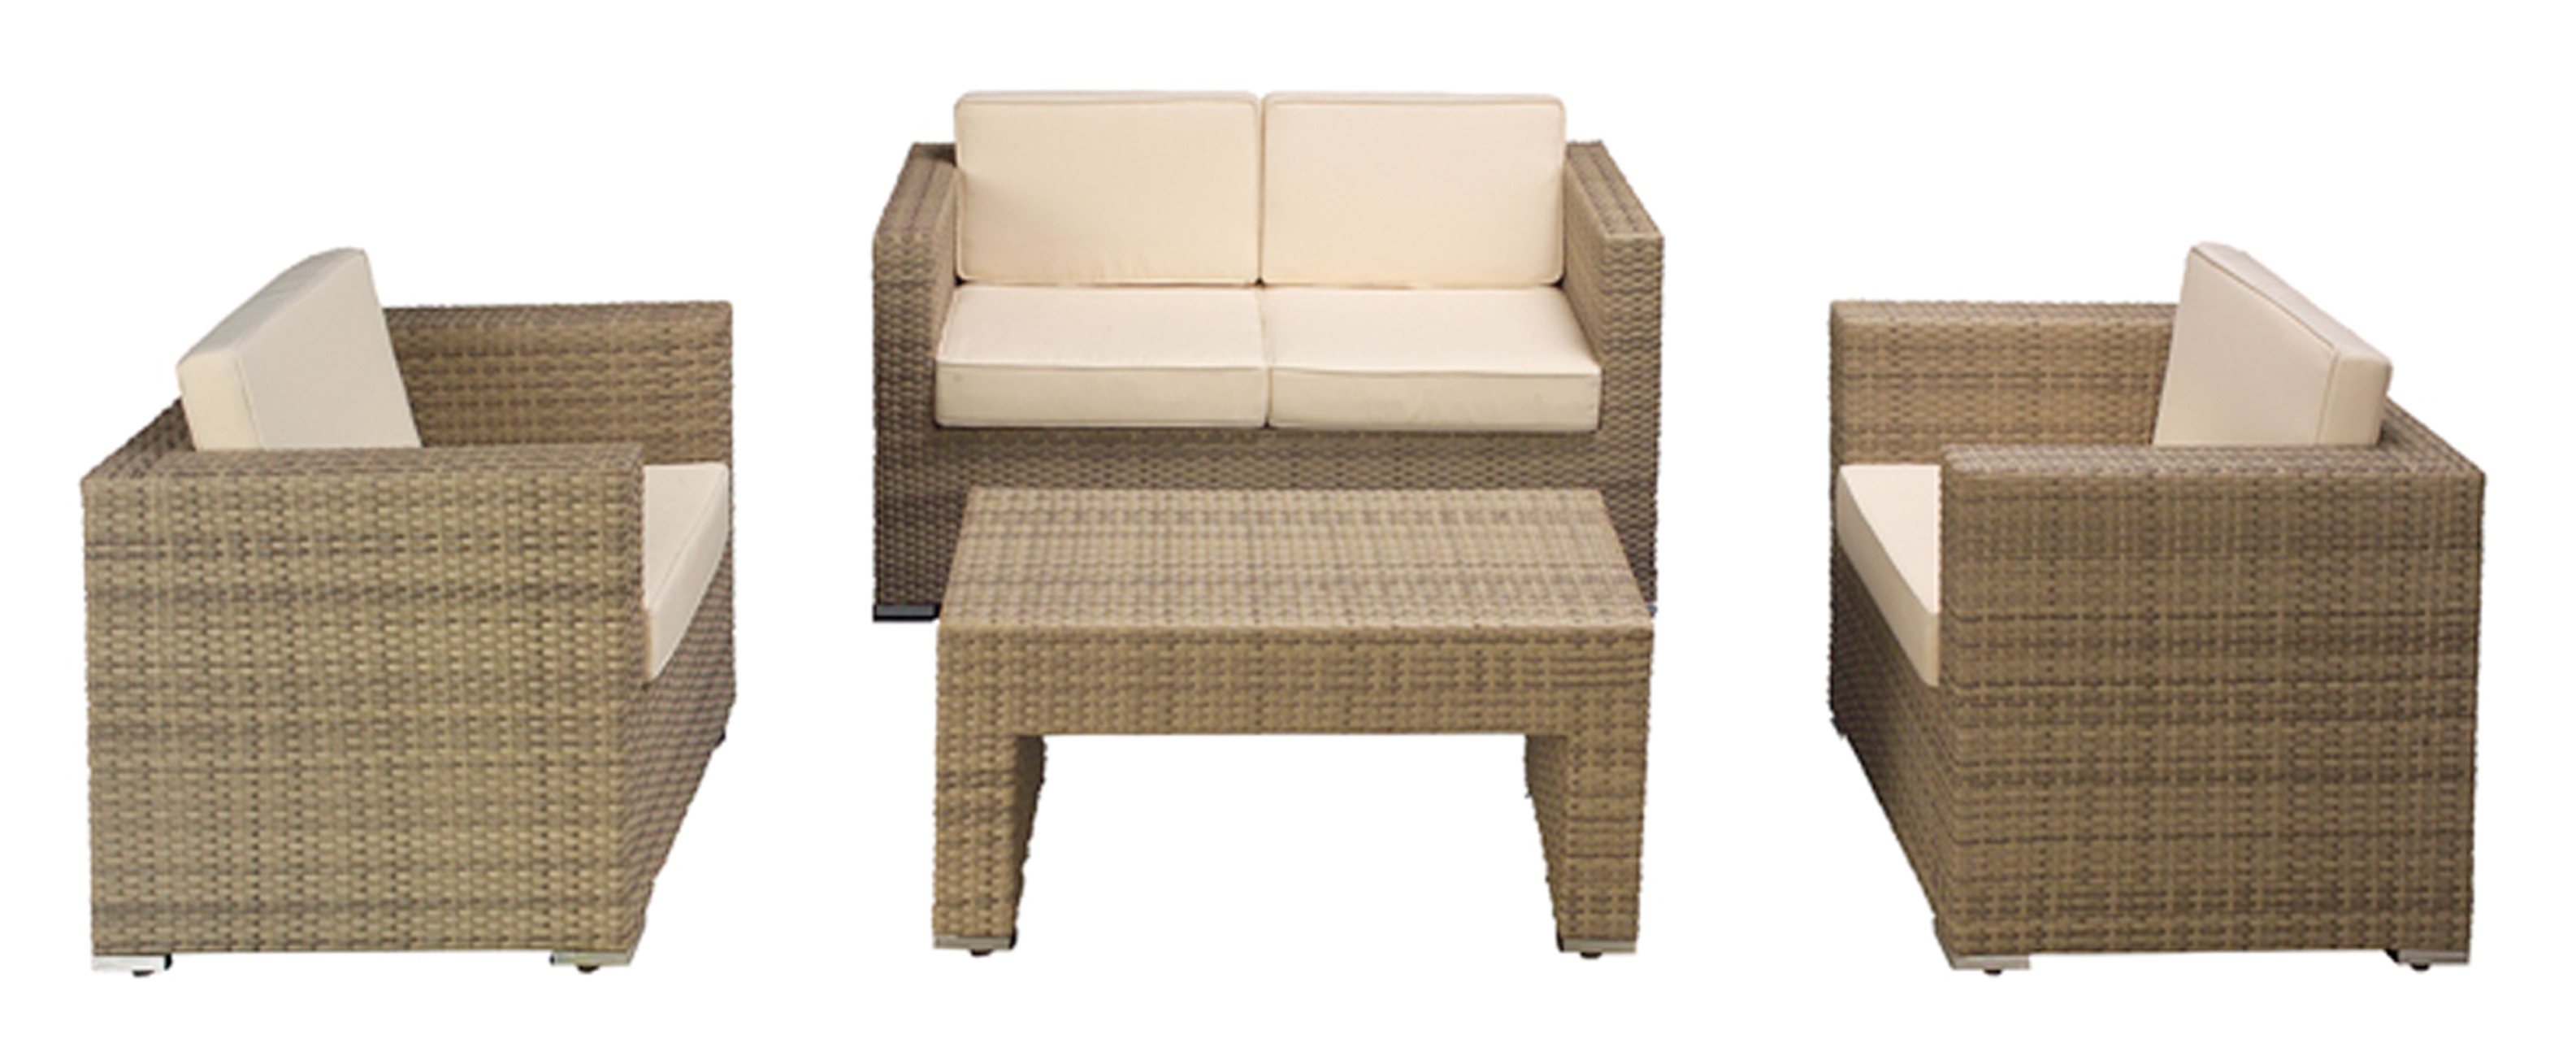 Набор Konway KN-4417_elfenbein диван, 2 кресла, стол, цвет слоновая кость